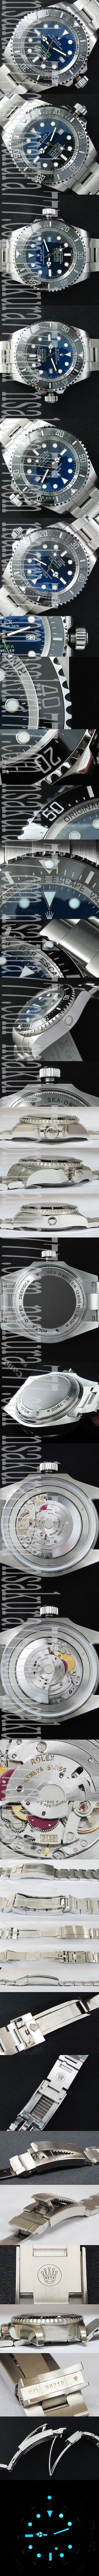 レプリカ時計ロレックス シードゥエラーディープシー D-BLUE3135ムーブメント noob工場 v7 バージョン - ウインドウを閉じる